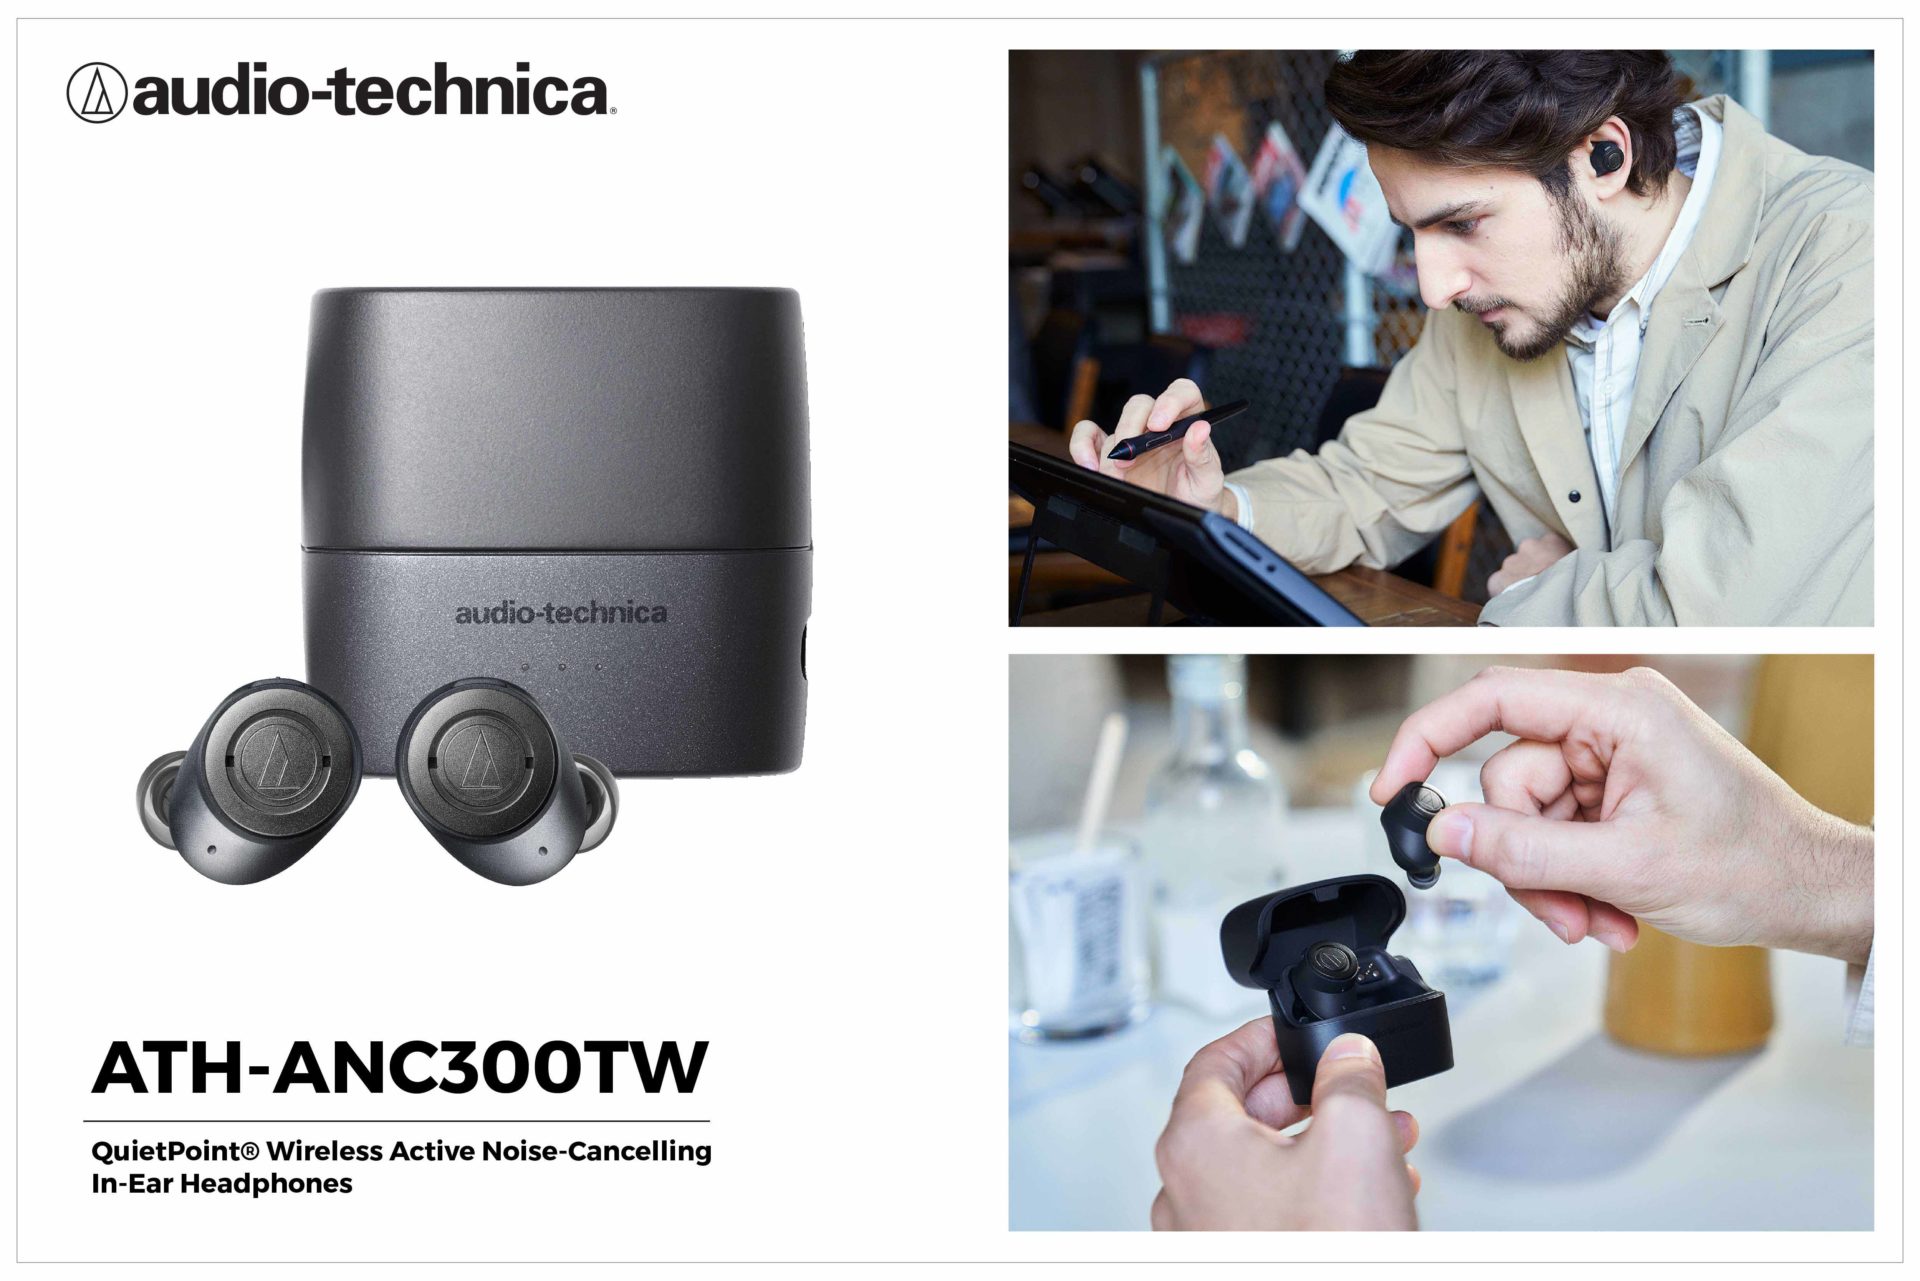 เปิดตัวหูฟังไร้สาย “ATH-ANC300TW” จากแบรนด์ Audio-Technica ชูระบบตัดเสียงรบกวนชั้นเยี่ยม